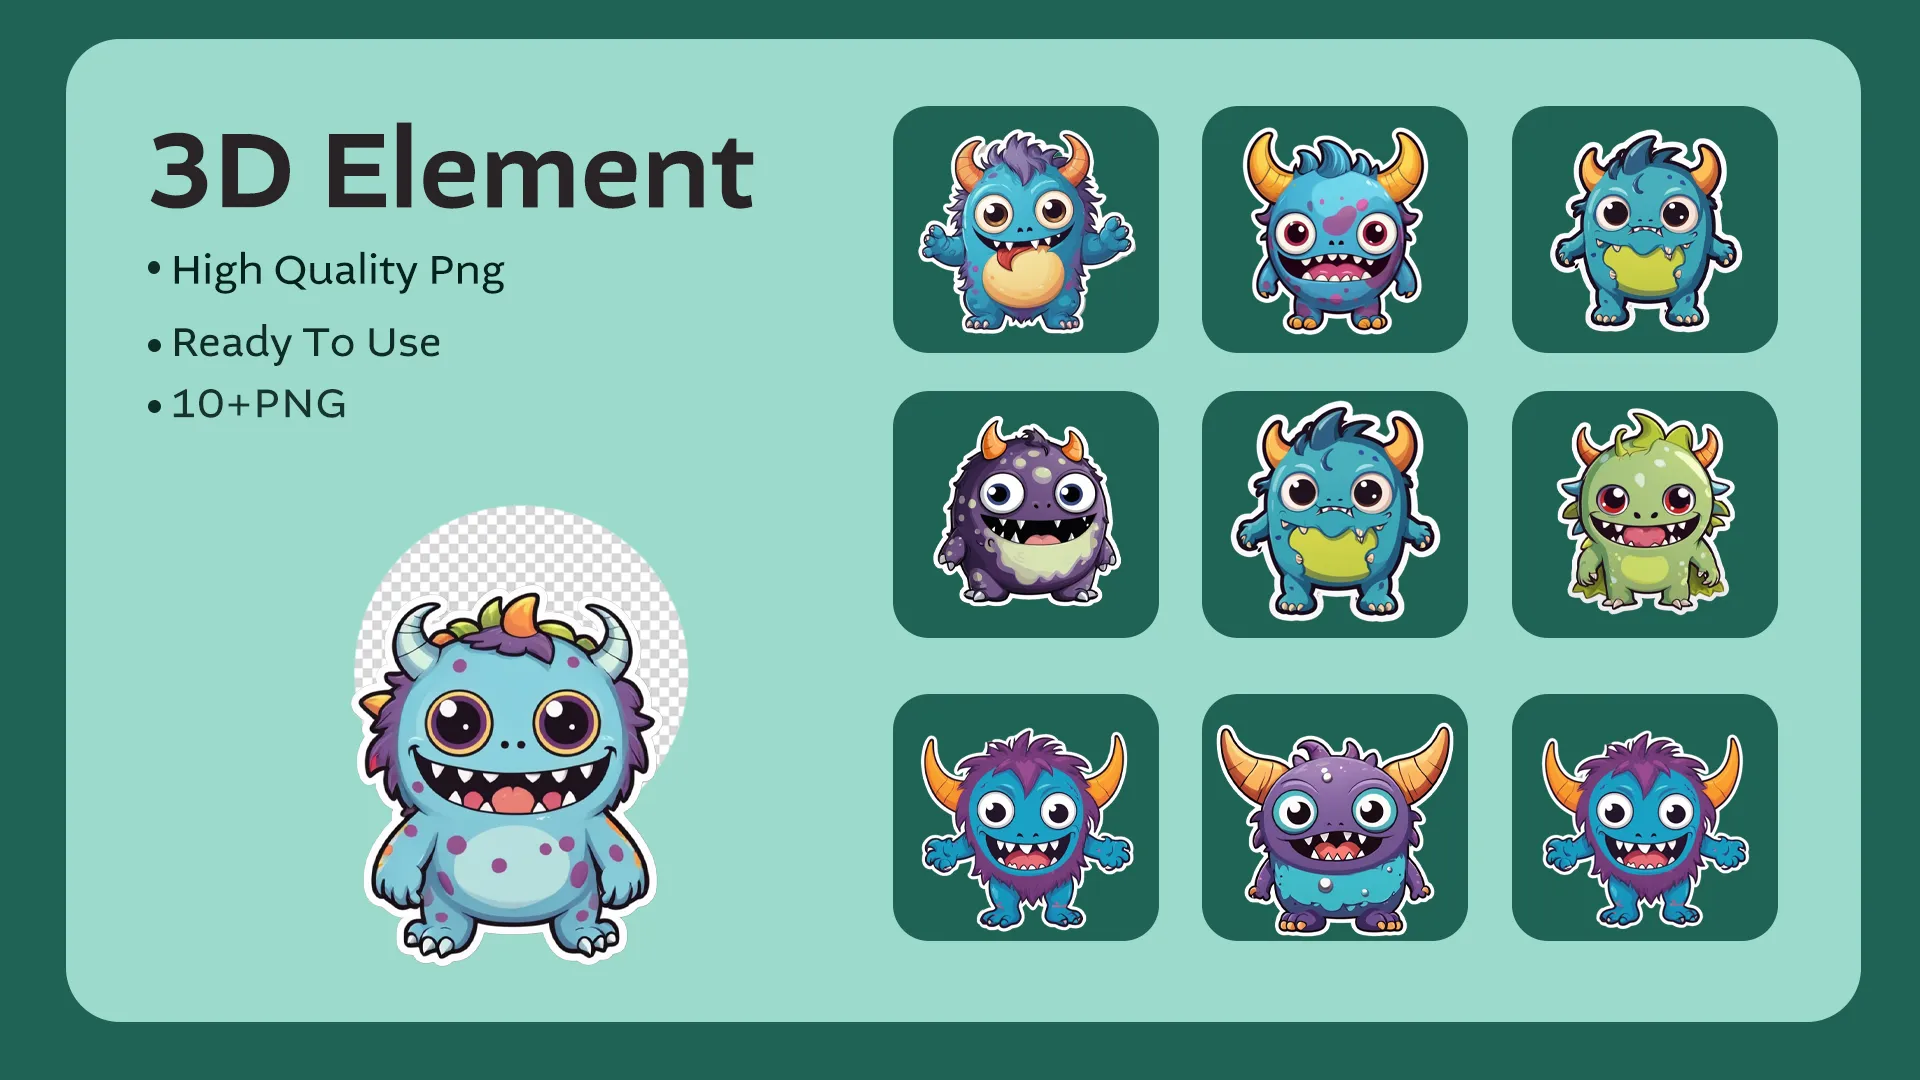 Cute Monster 3D Elements Design image